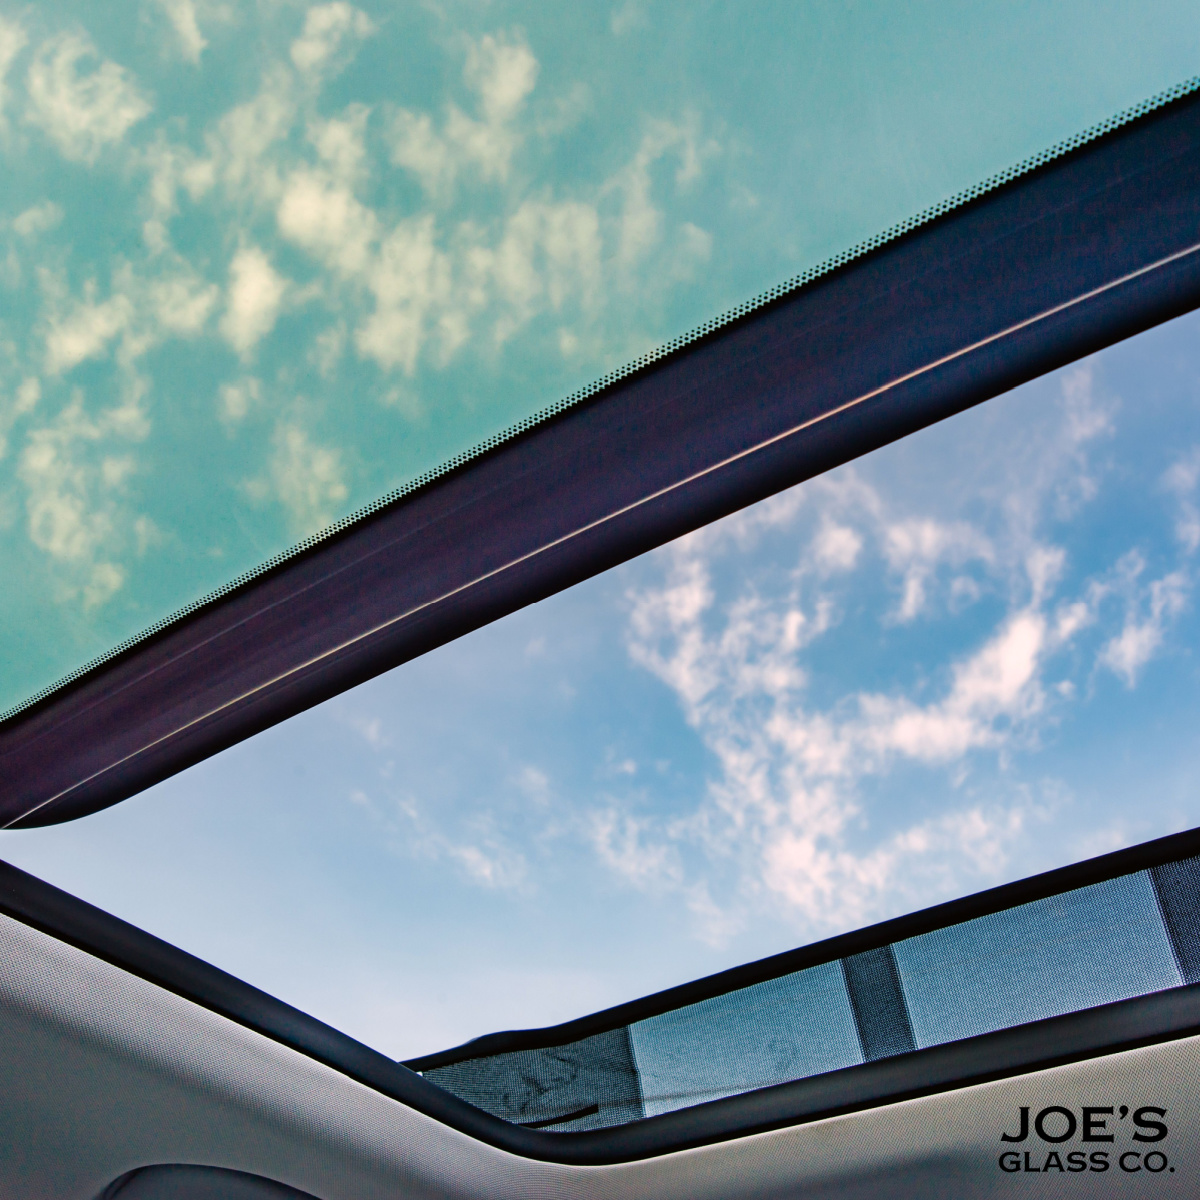 Cracked Auto Roof Glass? Use Joe’s Glass Co., Near Edmonds